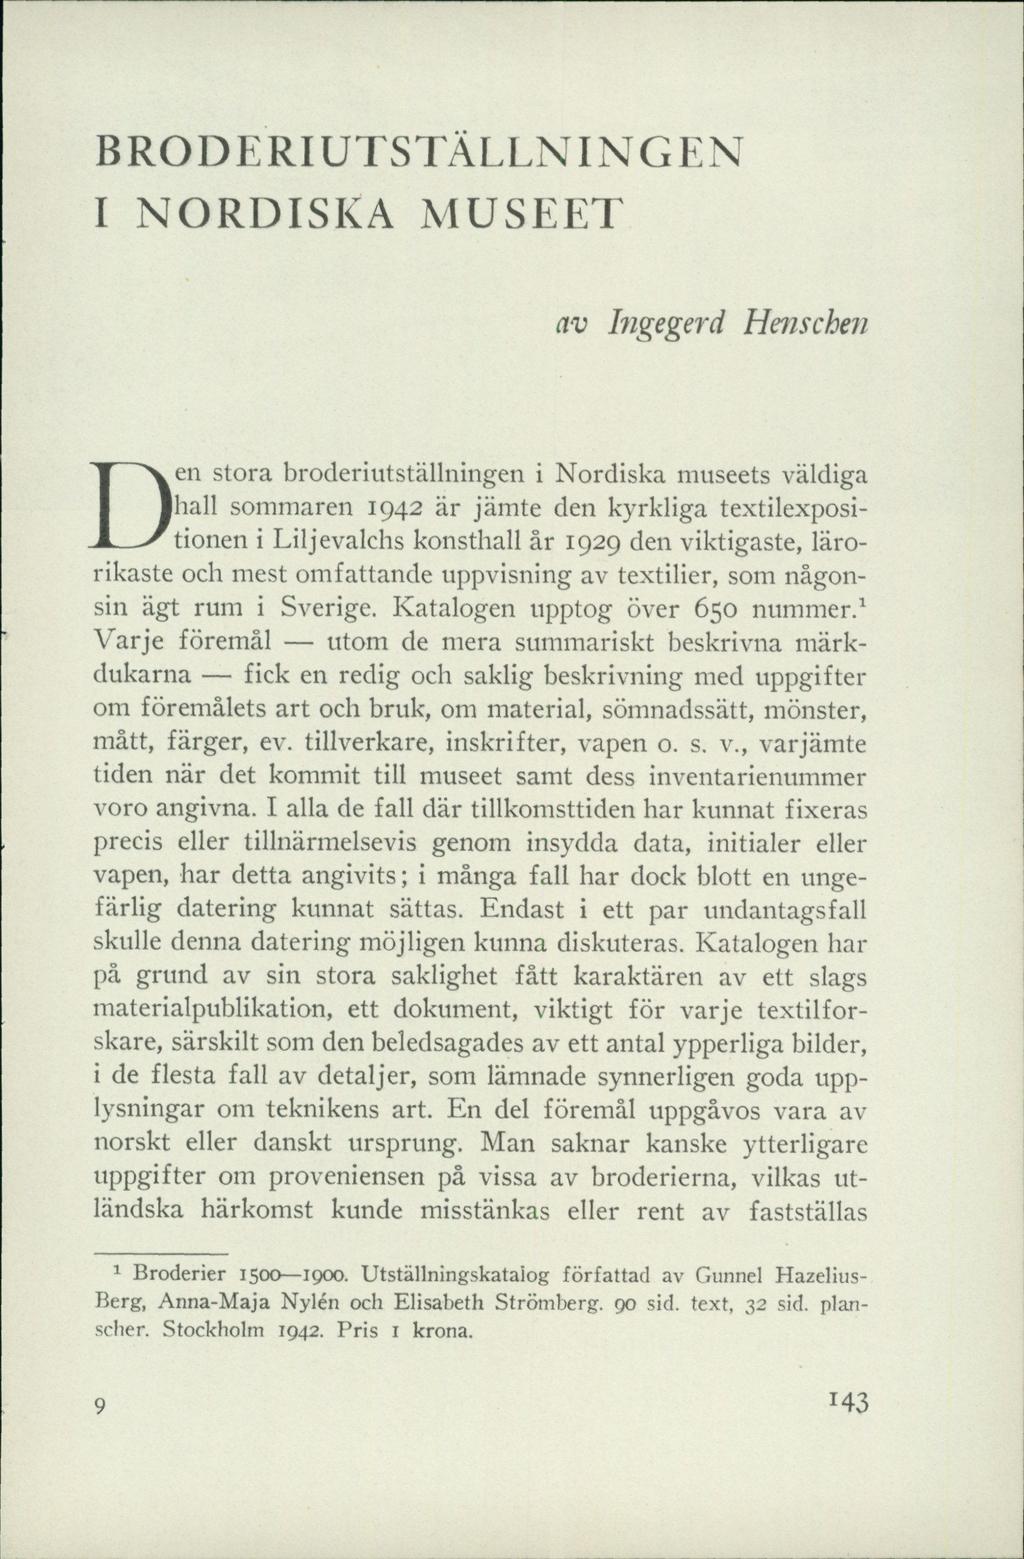 BRODERIUTSTÄLLNINGEN I NORDISKA MUSEET av Ingegerd Henschen Den stora broderiutställningen i Nordiska museets väldiga hall sommaren 1942 är jämte den kyrkliga textilexpositionen i Liljevalchs